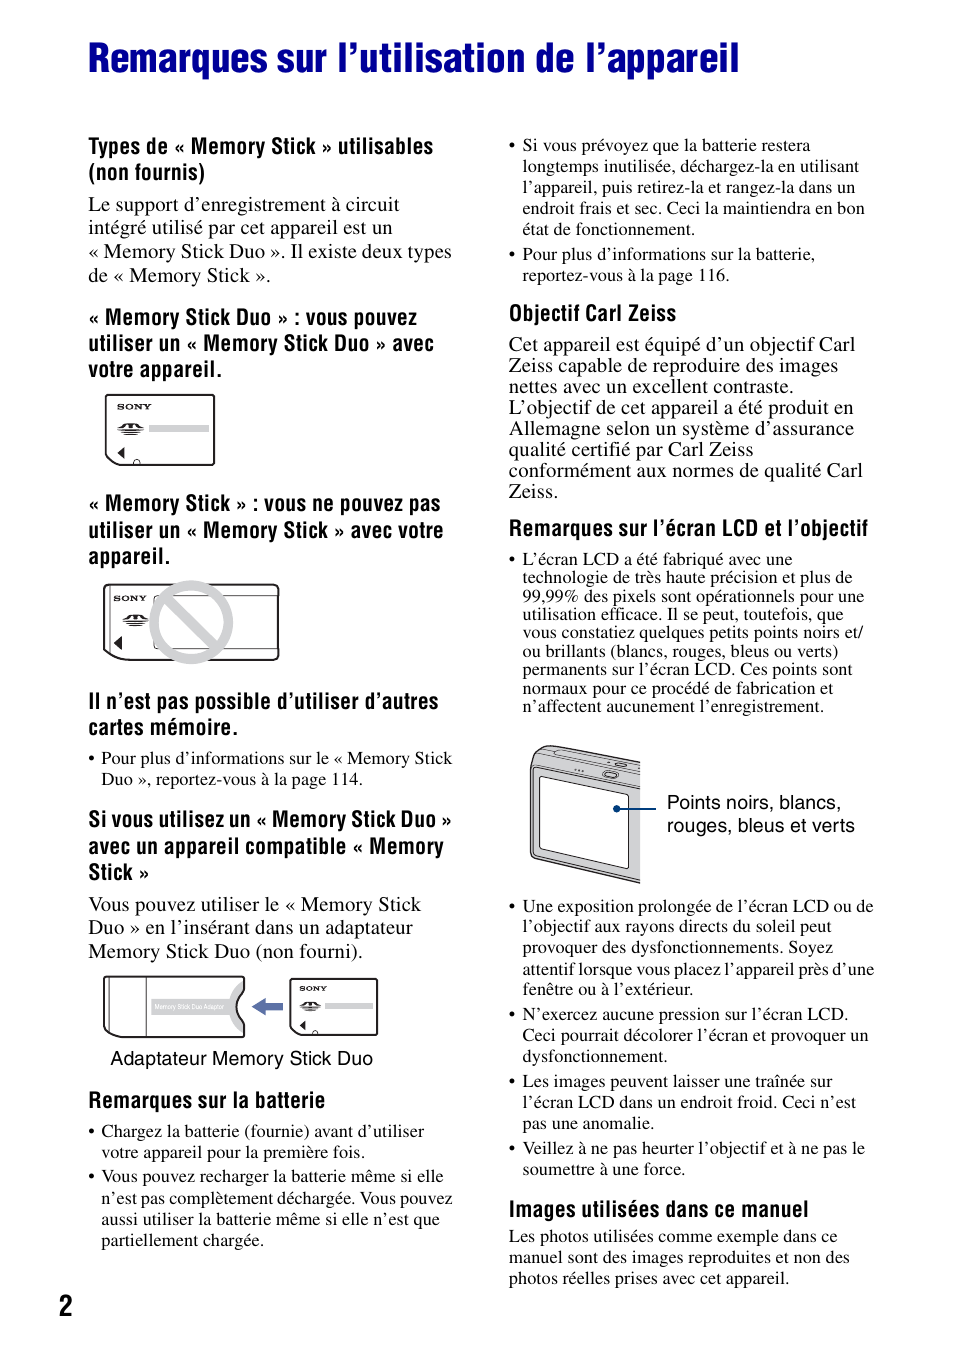 Remarques sur l’utilisation de l’appareil | Sony DSC-T20 Manuel d'utilisation | Page 2 / 122